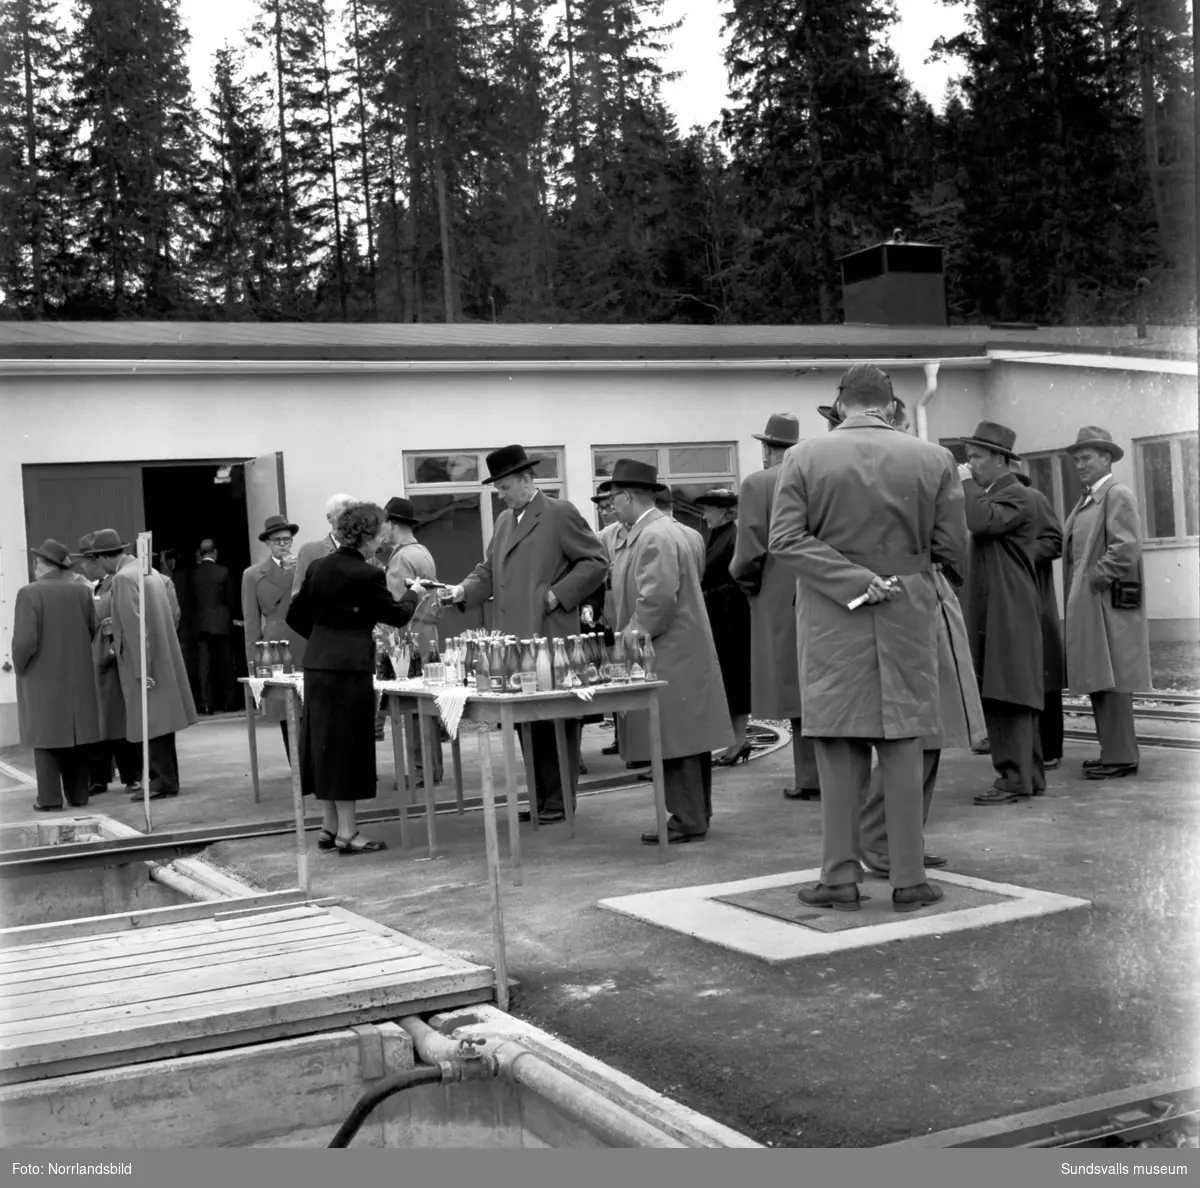 Premiär för Linjeflyg på Midlanda flygplats 1957. Pampig invigning med tal av såväl kommunikationsminister Gösta Skoglund som Linjeflygs direktör Sven Östling inför ett par hundra åskådare. Då var man fortfarande tvungen att åka färja ut till ön, bron kom i slutet av 1959.